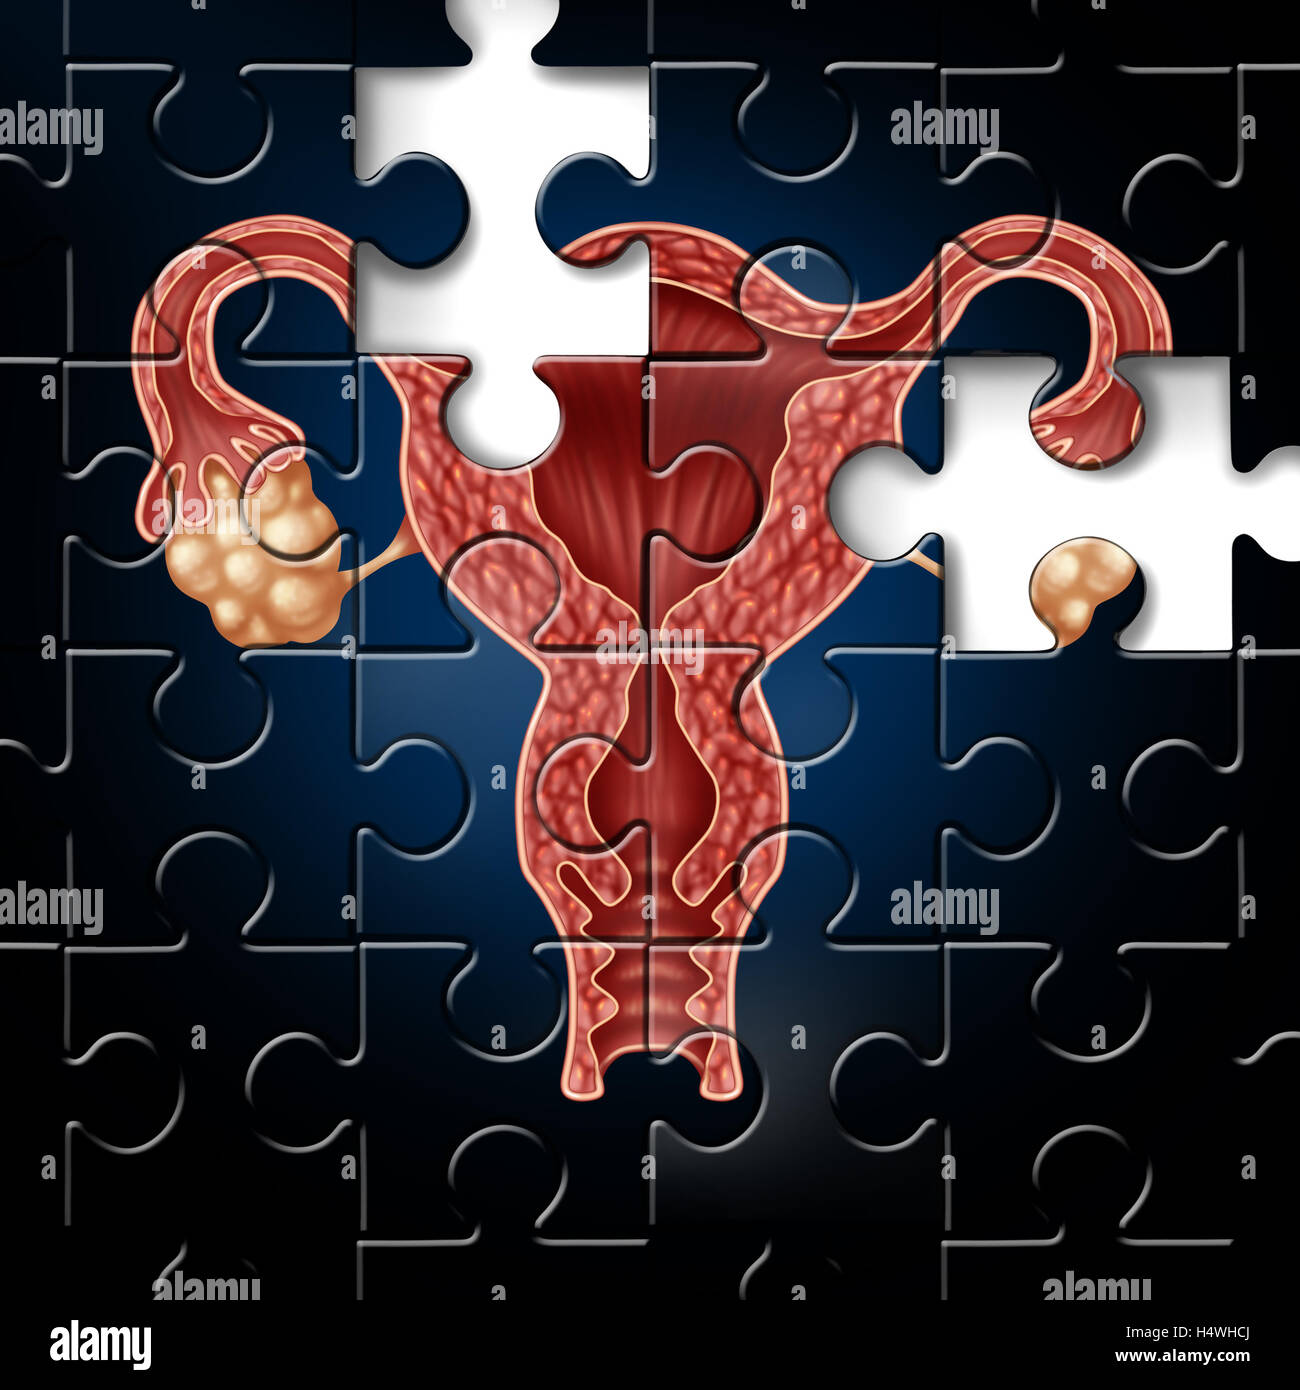 Herausforderung und Unfruchtbarkeit medizinische Fruchtbarkeitssymbol als eine unvollständige Puzzle mit einem Bild eines Uterus mit Eileiter als Gynäkologie-Ikone für Probleme in der weiblichen Reproduktion in einer 3D Darstellung Stil. Stockfoto